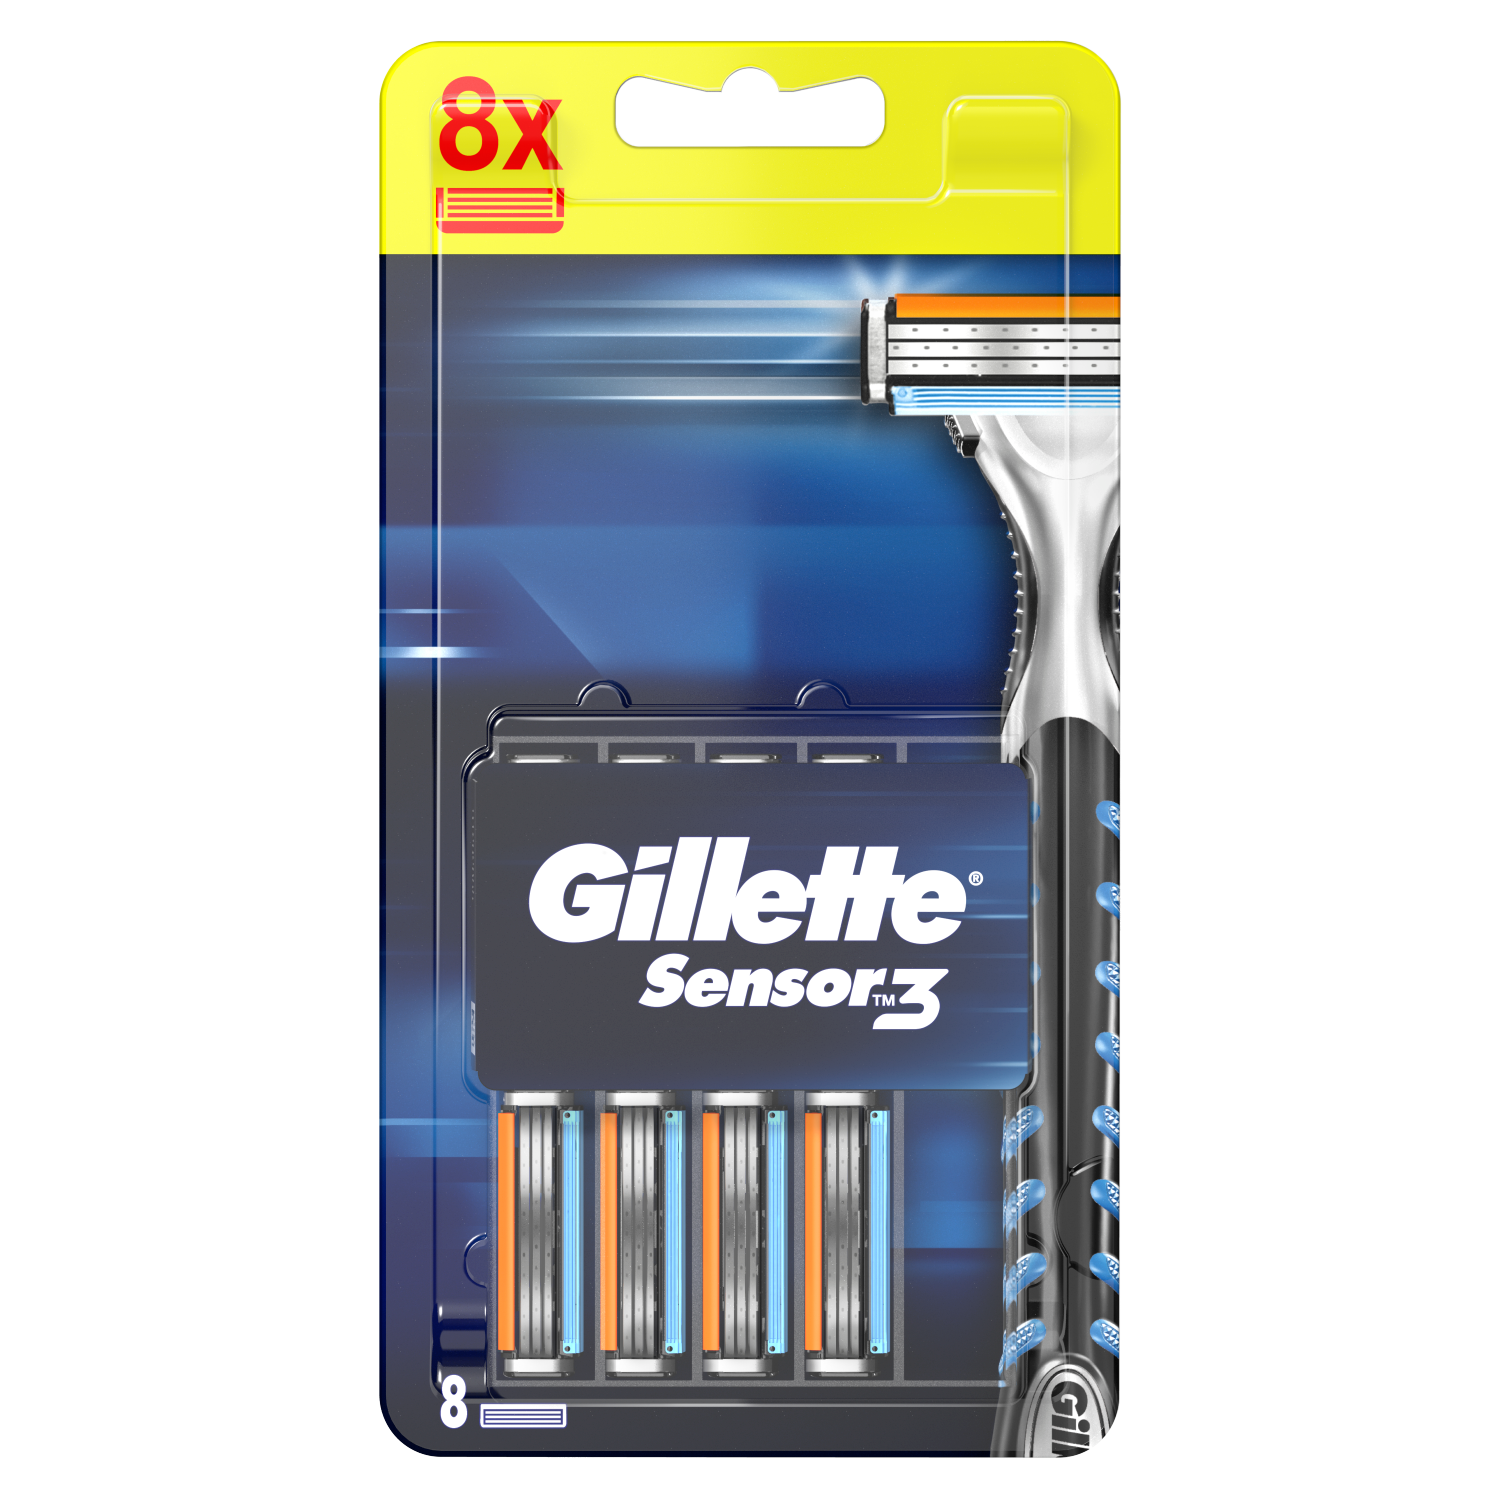 Gillette Sensor3 картридж для бритвы, 8 шт/1 упаковка gillette sensor3 одноразовые бритвы с технологией comfortgel 8 шт